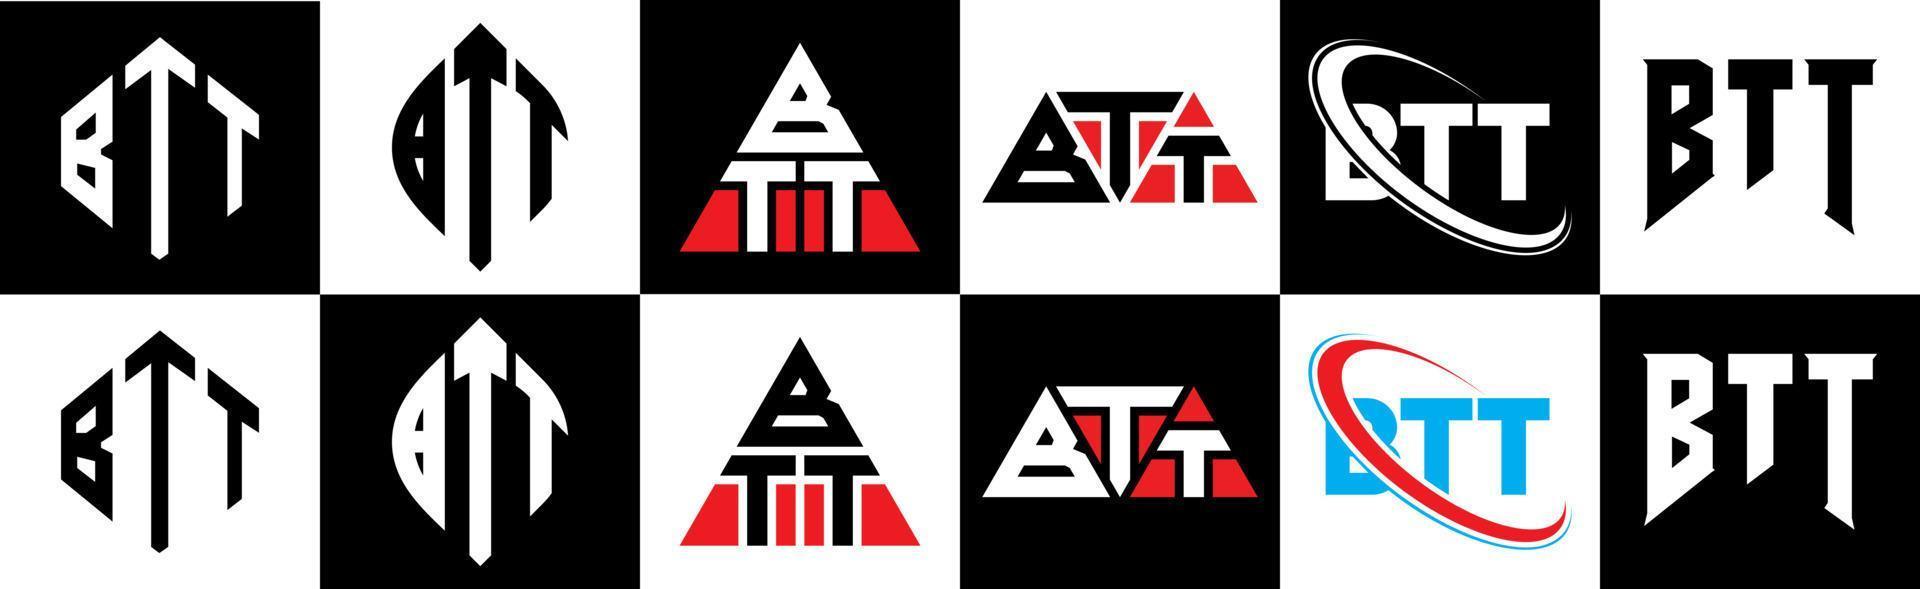 création de logo de lettre btt en six styles. polygone btt, cercle, triangle, hexagone, style plat et simple avec logo de lettre de variation de couleur noir et blanc dans un plan de travail. btt logo minimaliste et classique vecteur